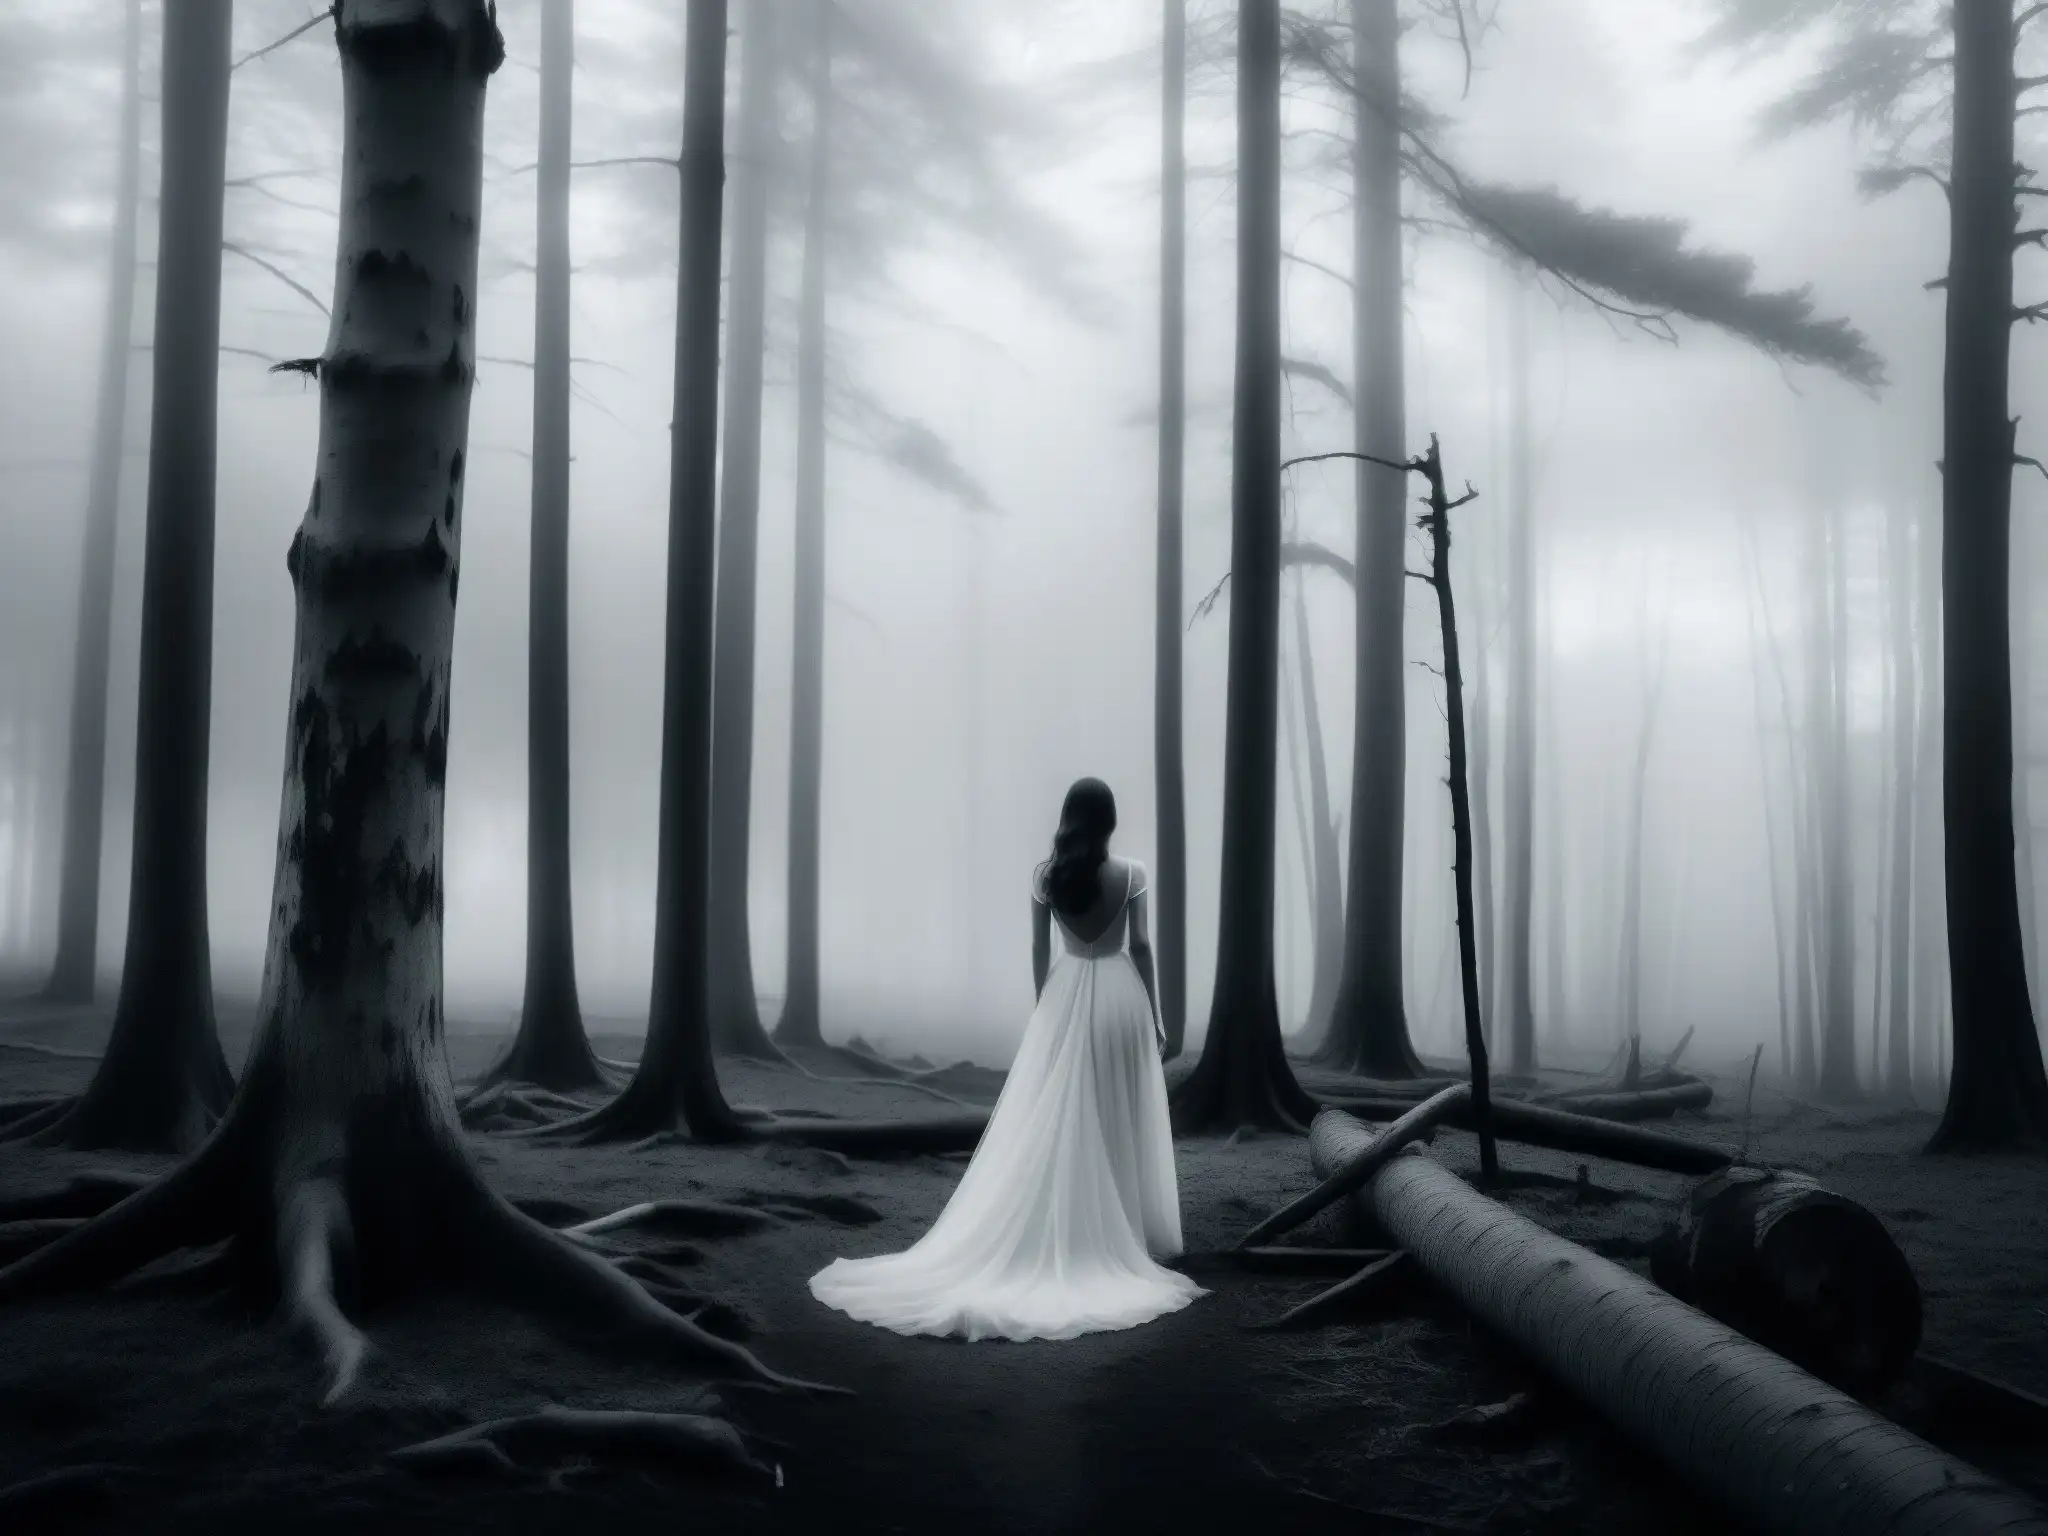 Imagen impactante de un bosque brumoso y desolado al atardecer, con una figura solitaria en un vestido blanco